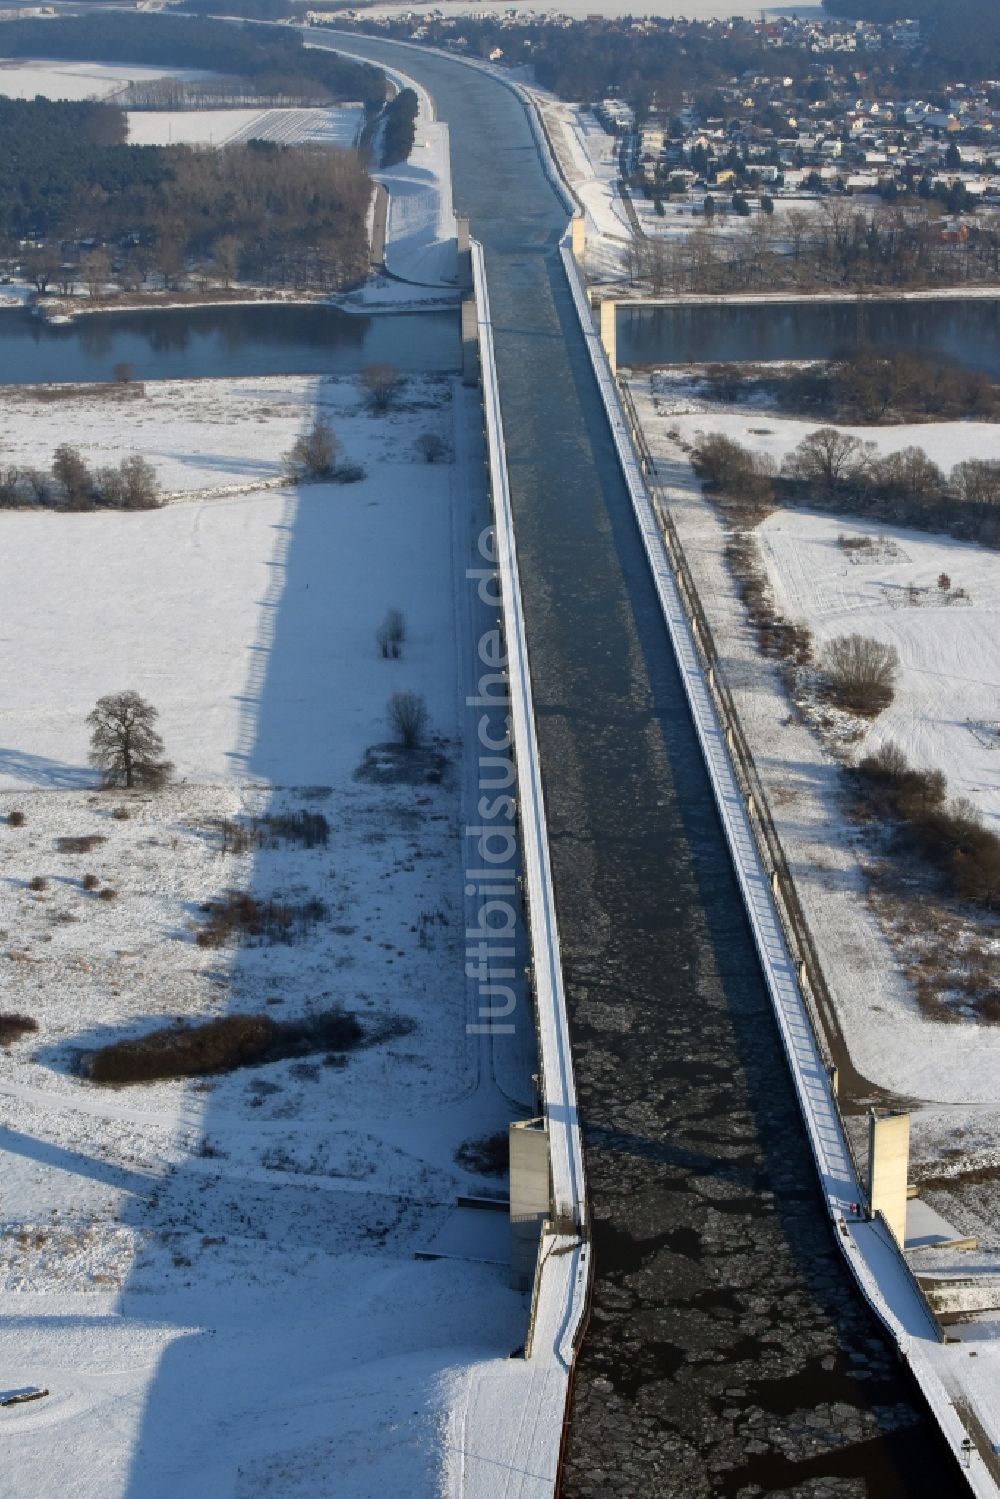 Hohenwarthe von oben - Winterlich Schnee- und Treibeis bedeckte Trogbrücke vom Mittellandkanal über die Elbe zum Elbe-Havel-Kanal am Wasserstraßenkreuz MD bei Hohenwarthe in Sachsen-Anhalt